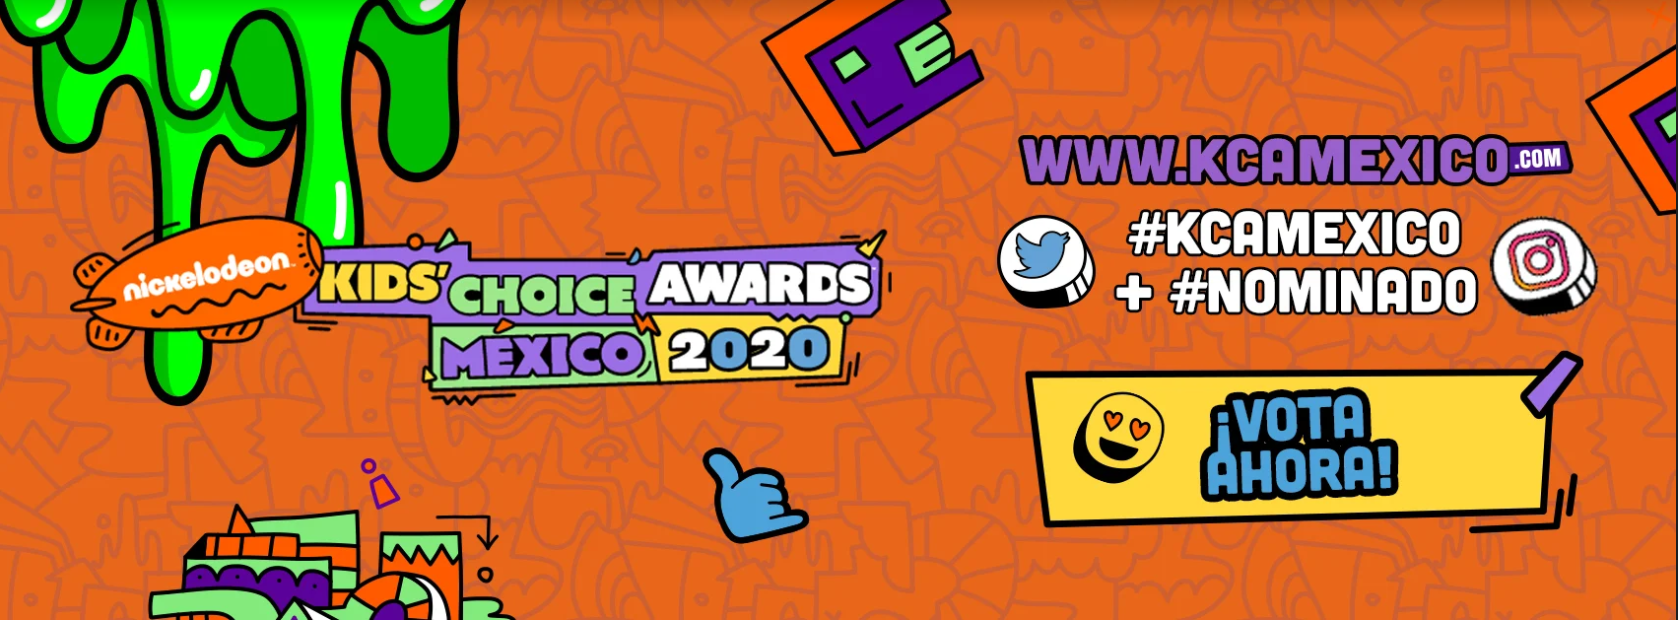 Conoce a los pre-nominados en los Kids’ Choice Awards México 2020 